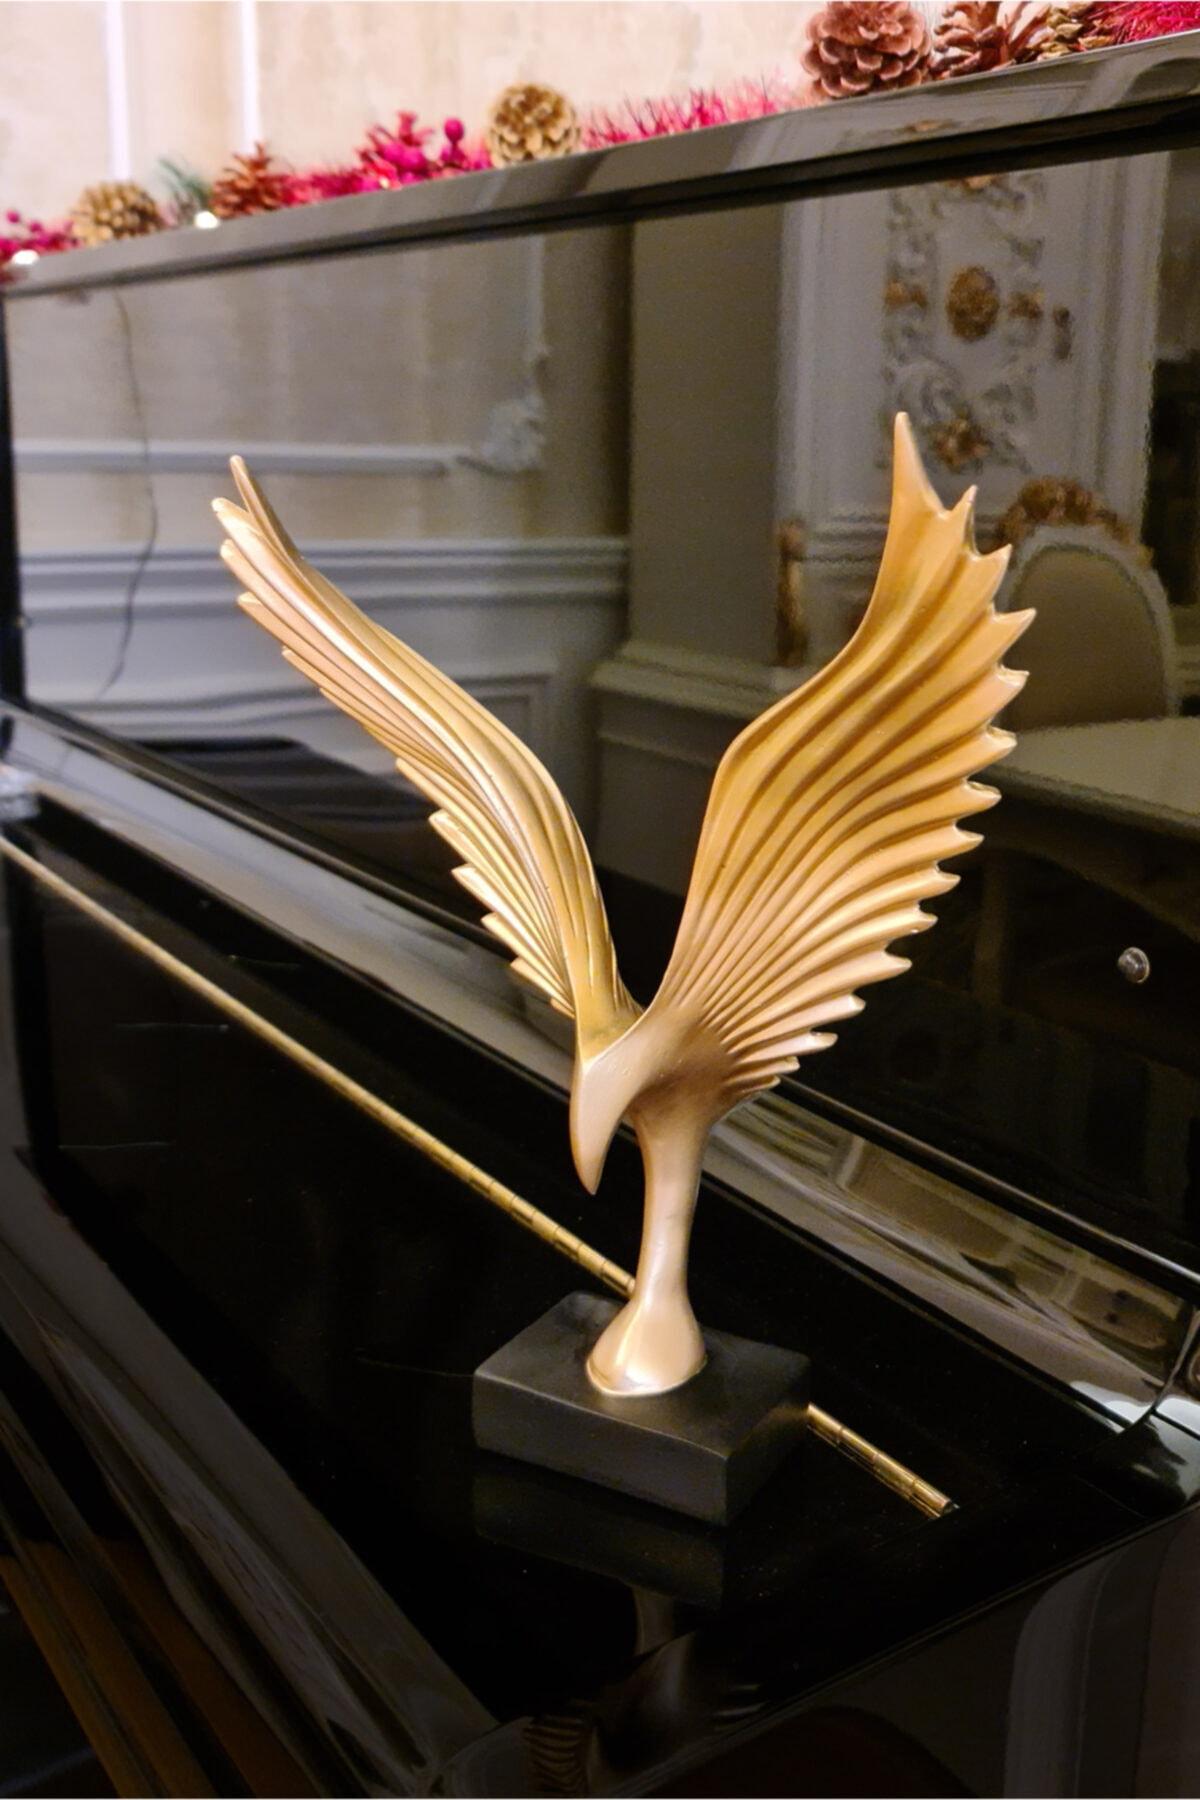 مجسمه پرنده طلایی کد.1006